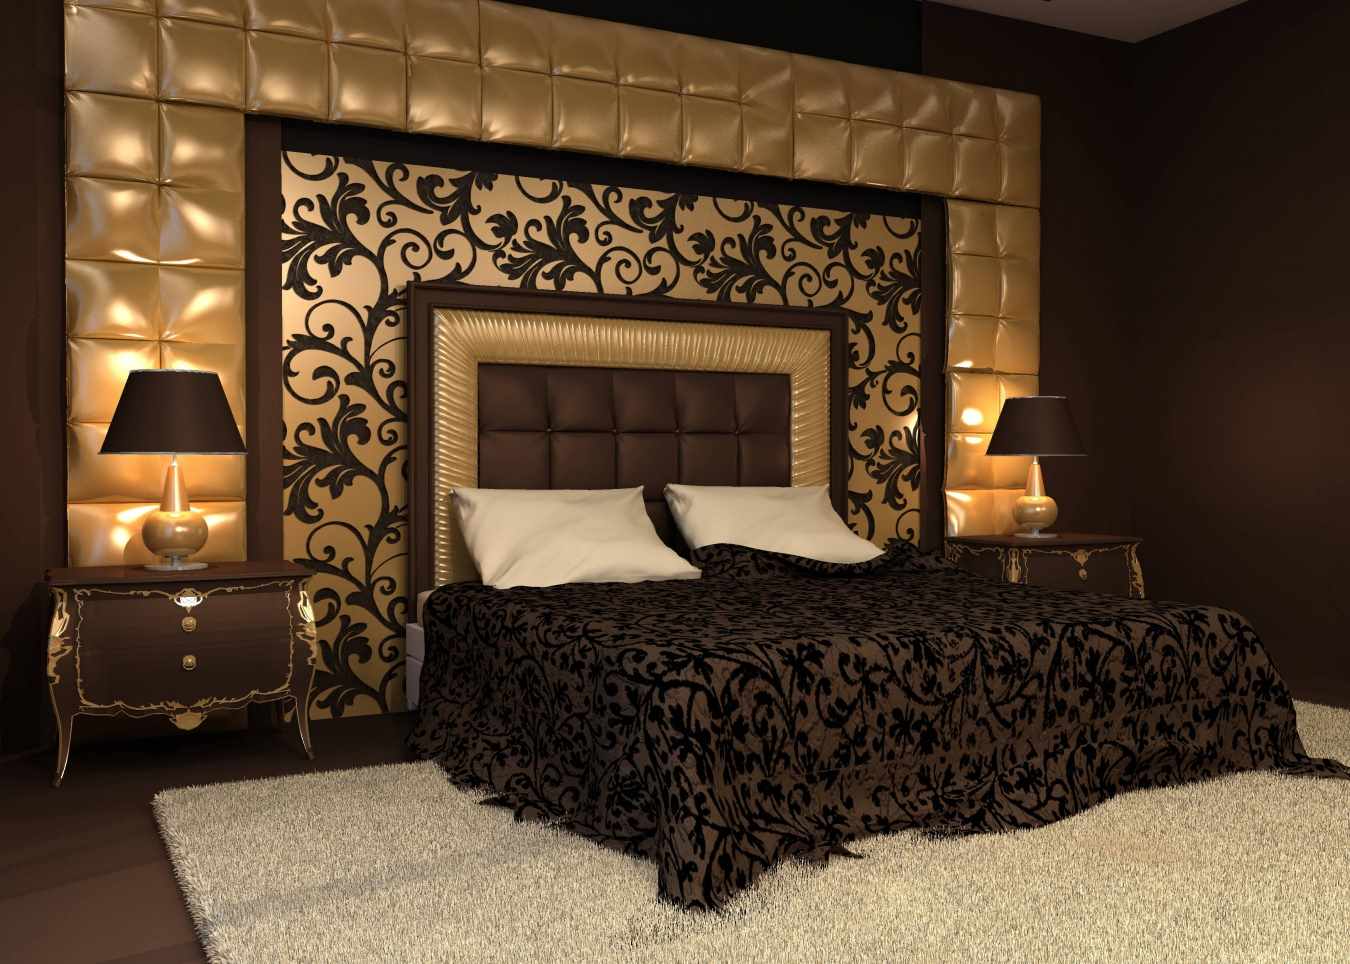 Un esempio di una leggera decorazione del design delle pareti della camera da letto